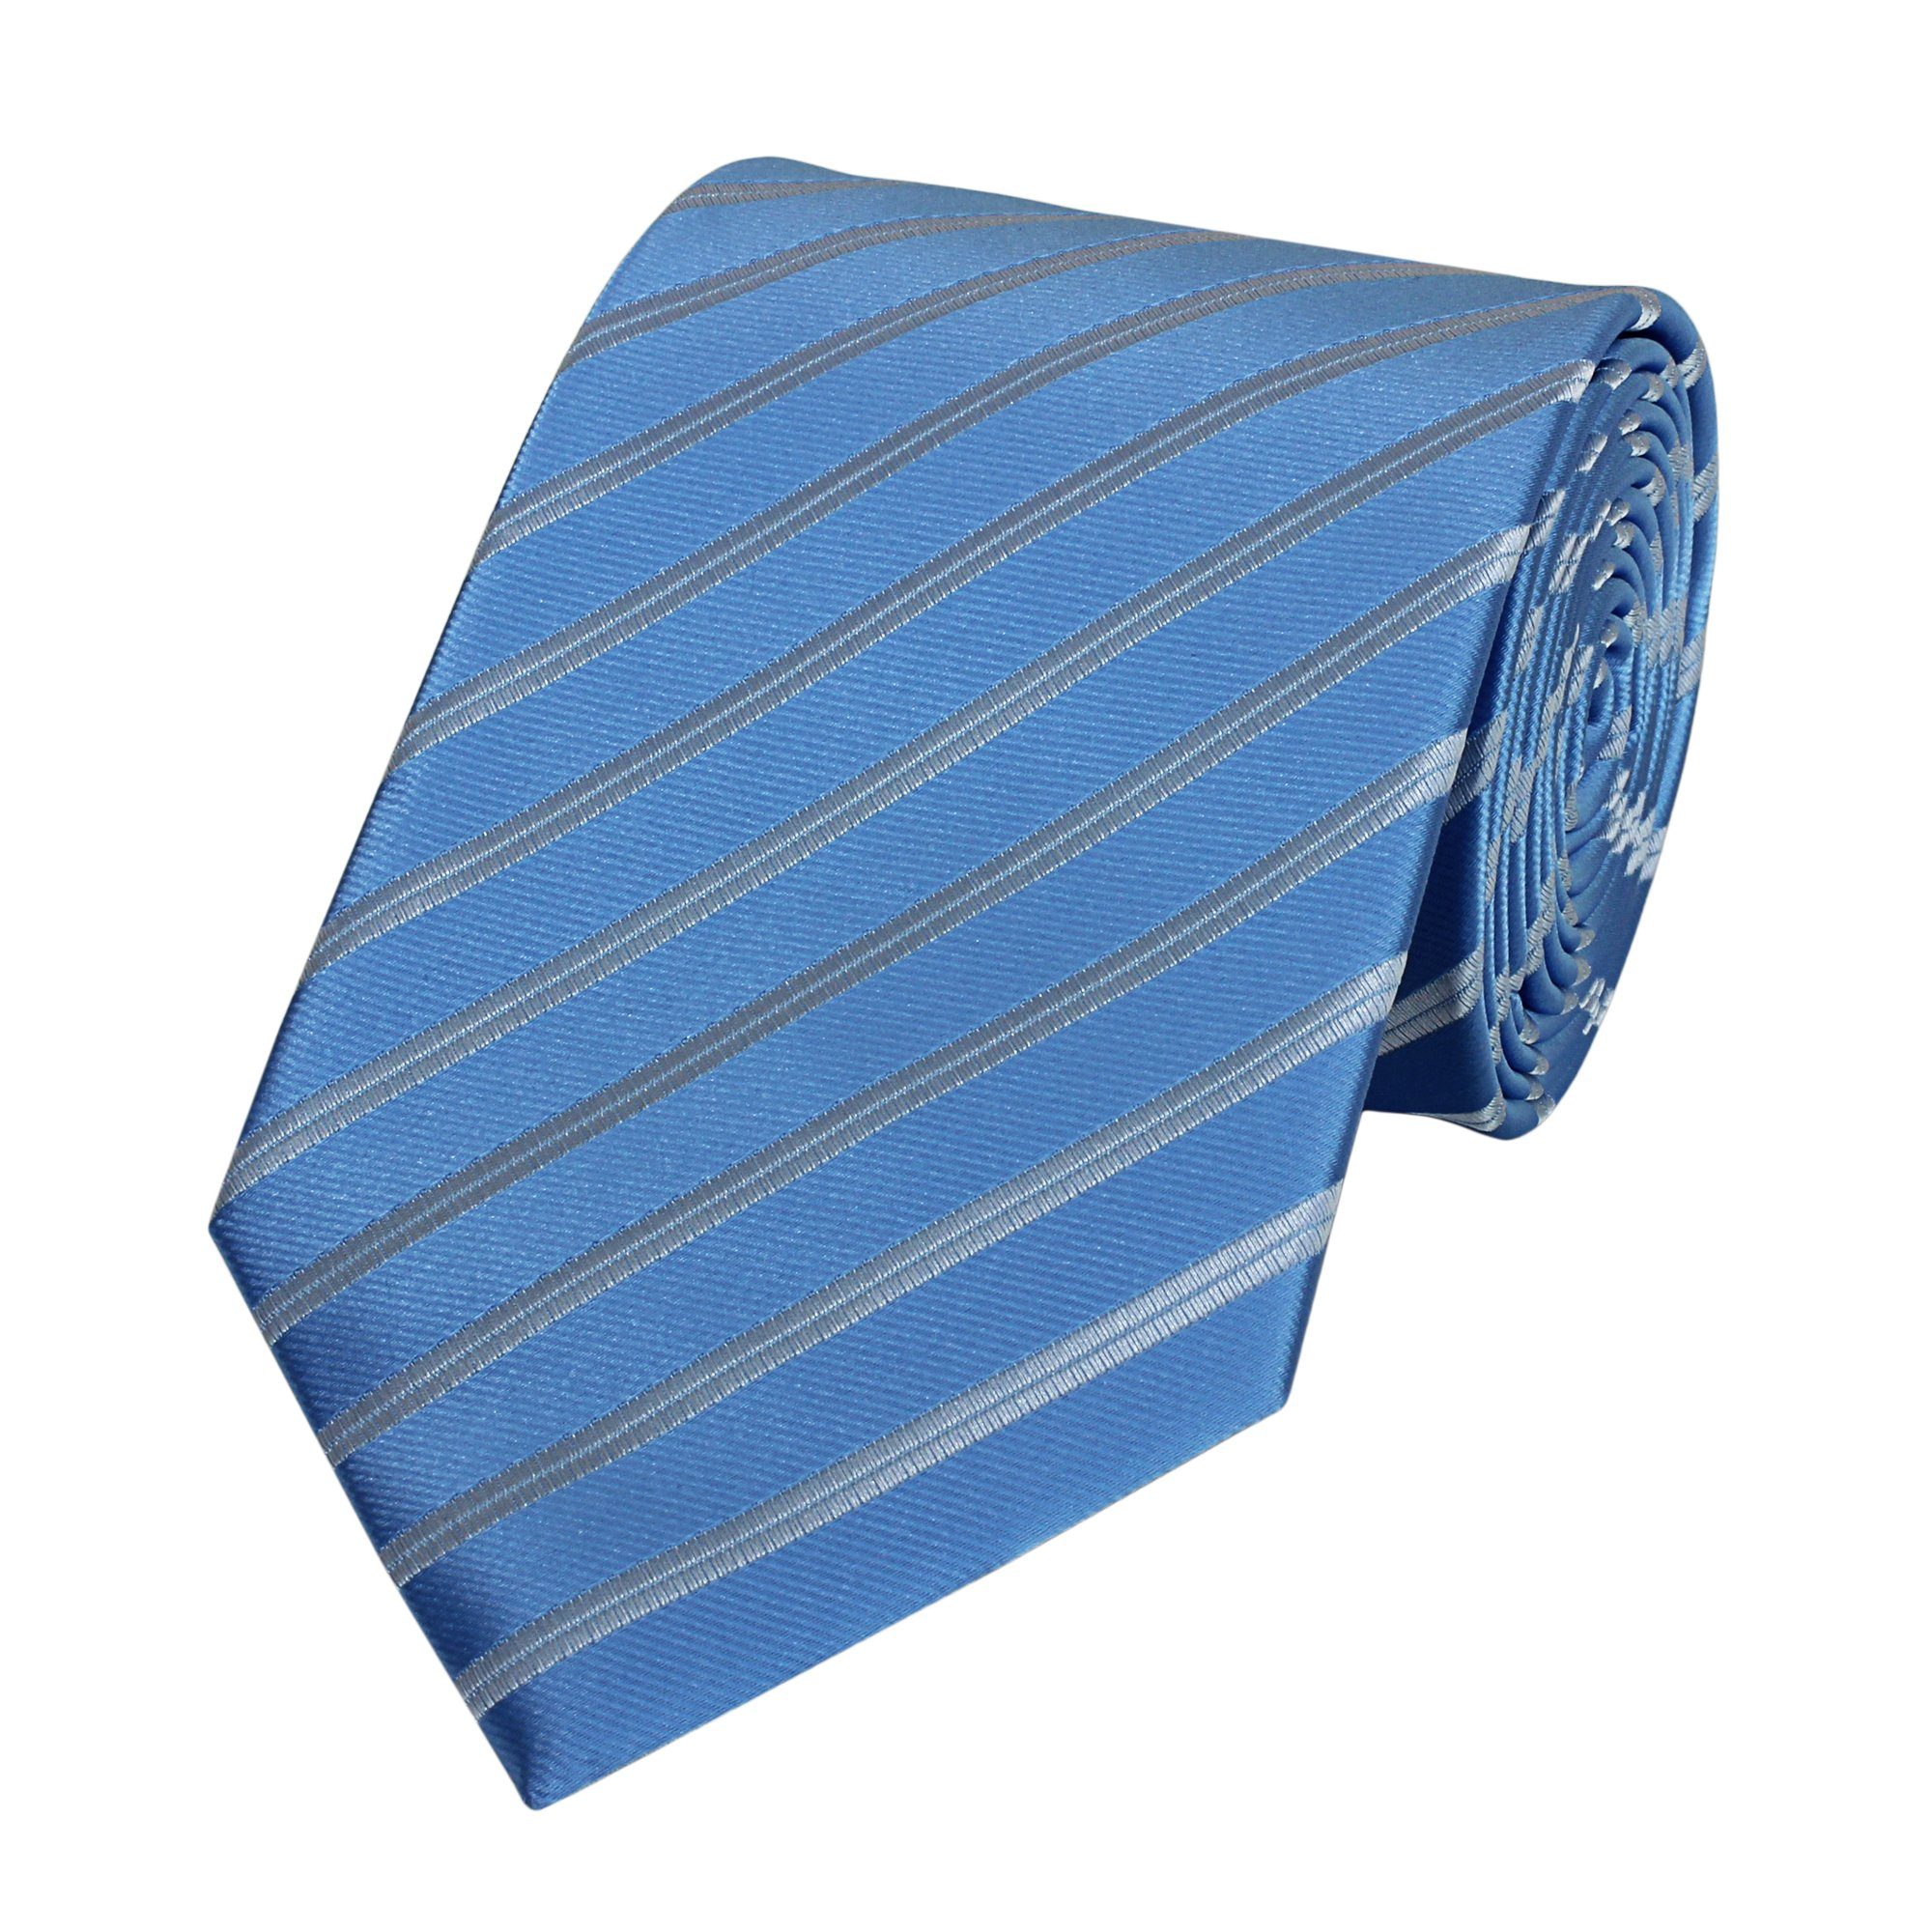 Fabio Farini Krawatte Herren Krawatte Blautöne - verschiedene Blaue Männer Schlips in 8cm (ohne Box, Gestreift) Breit (8cm), Blau Silber Streifen - Sea Blue/Silver